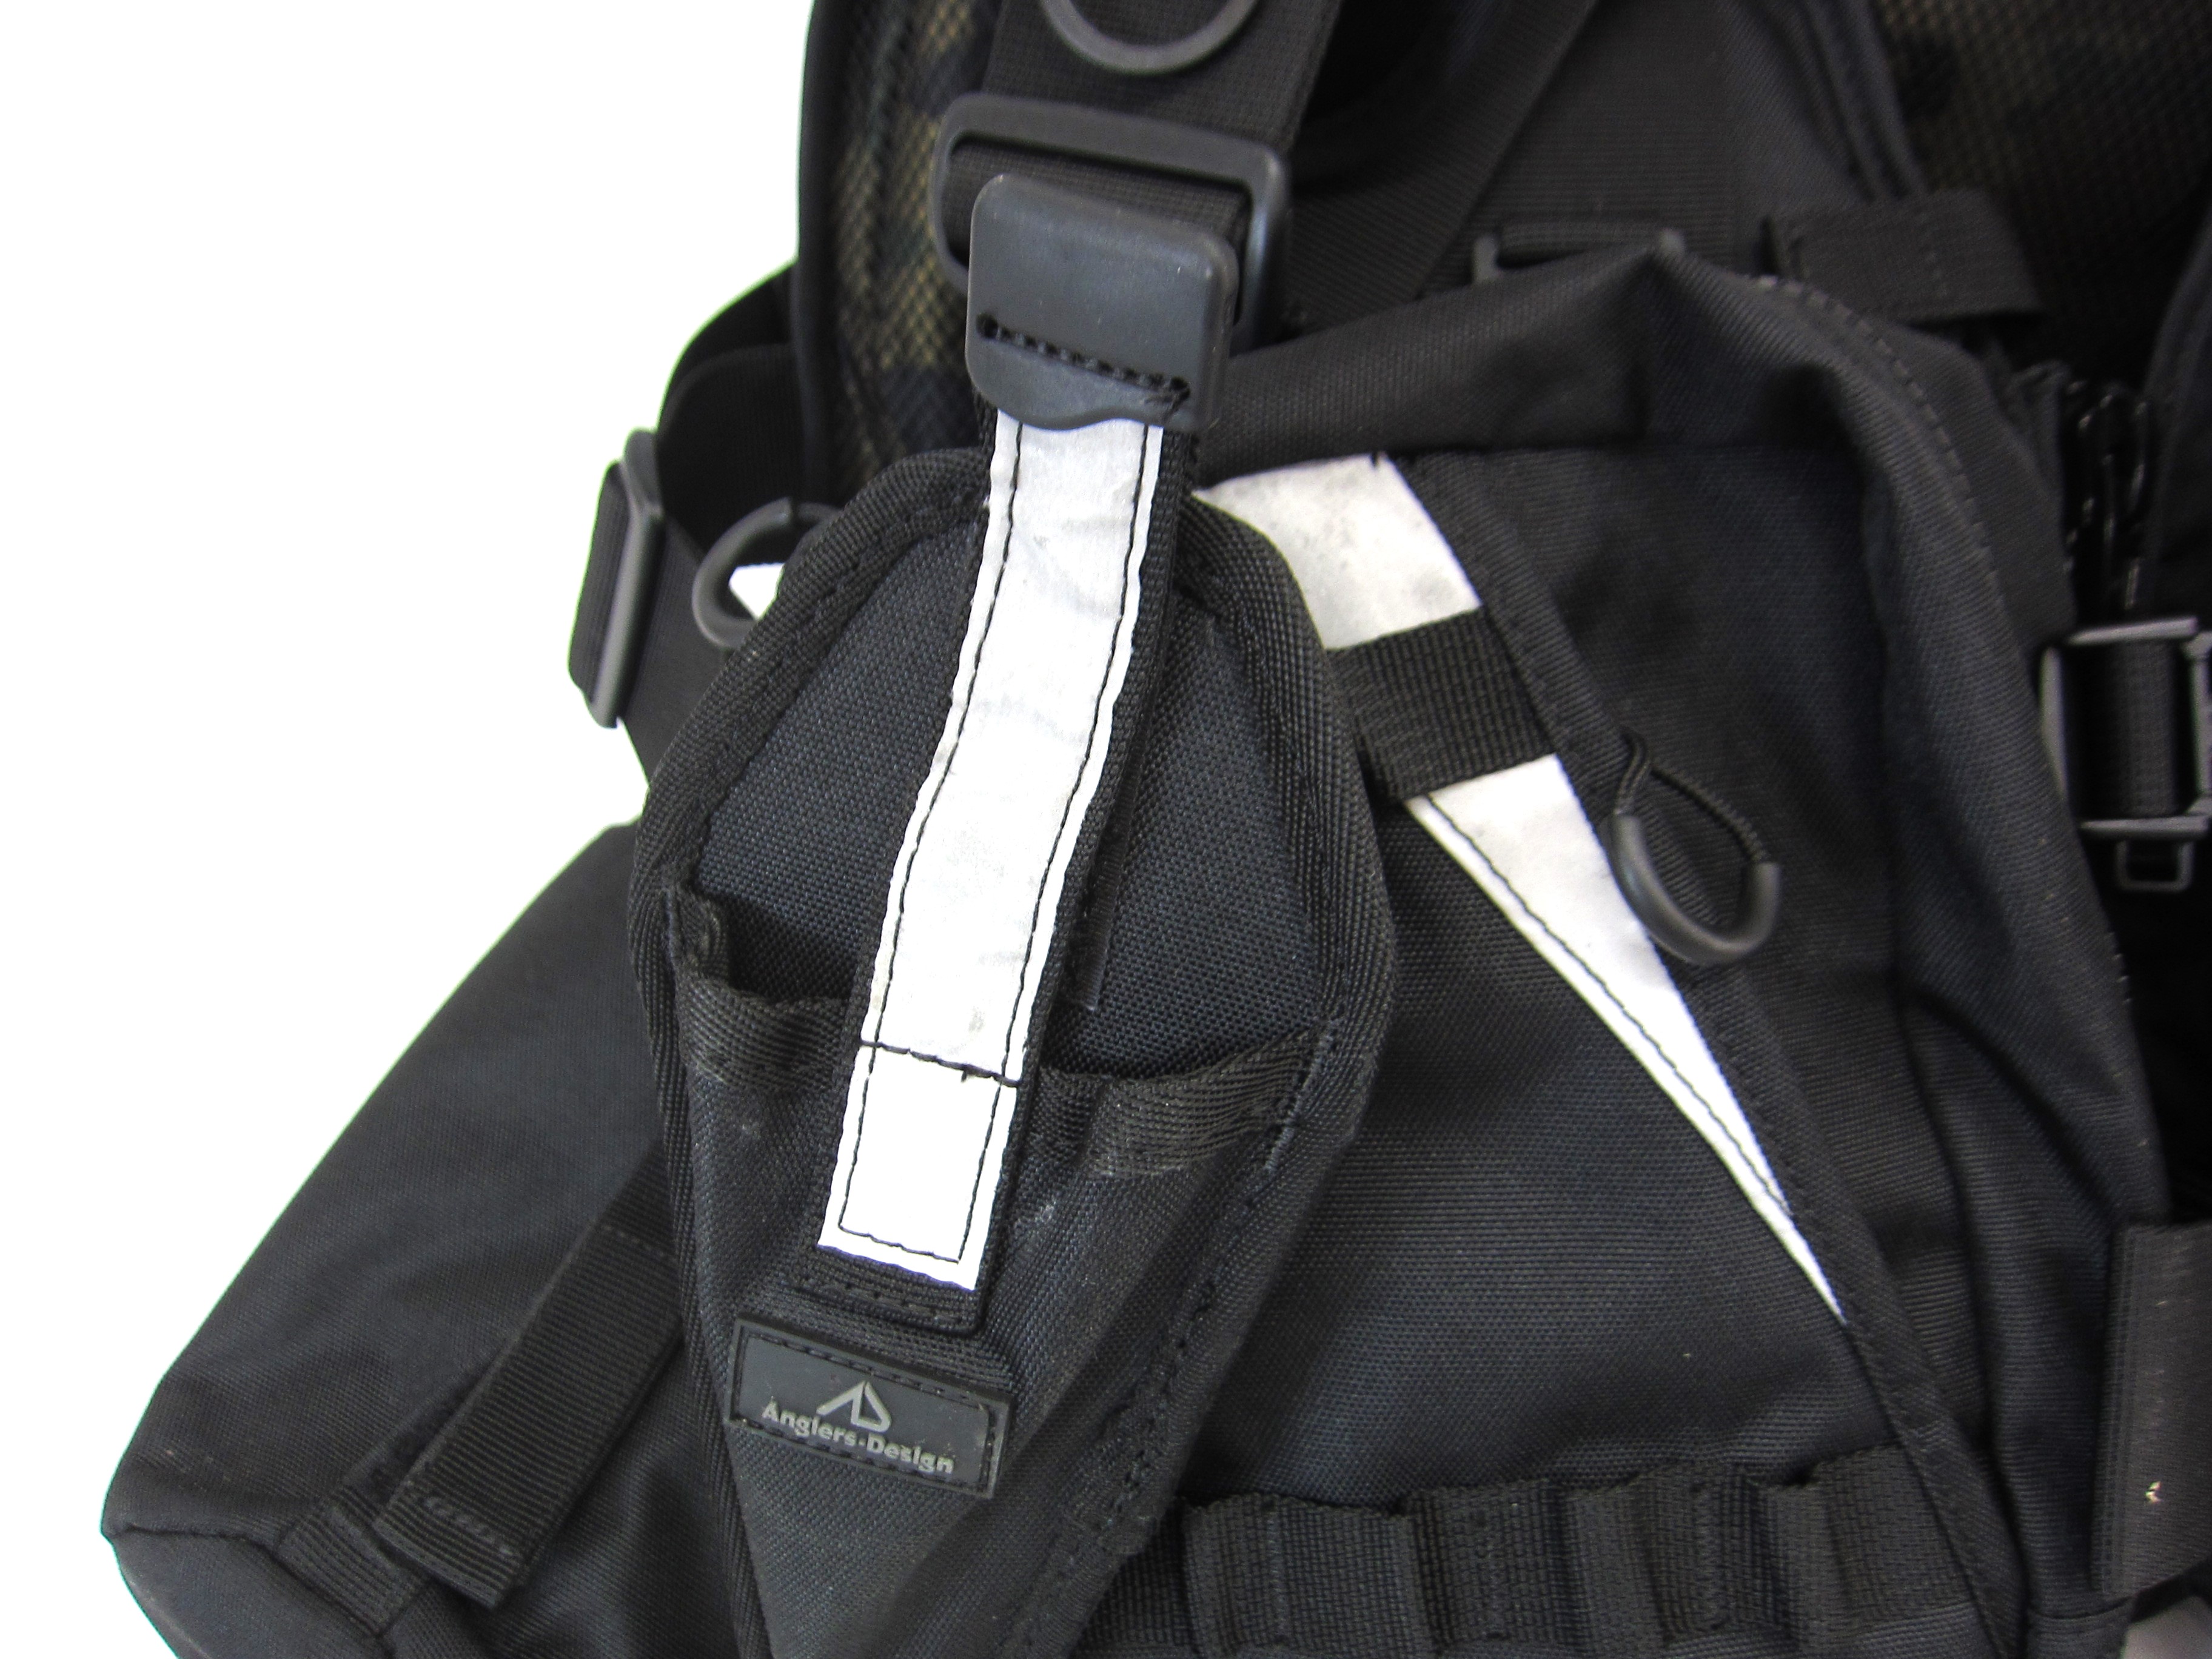  angler z design Extreme 3 floating the best life jacket ∠US4047